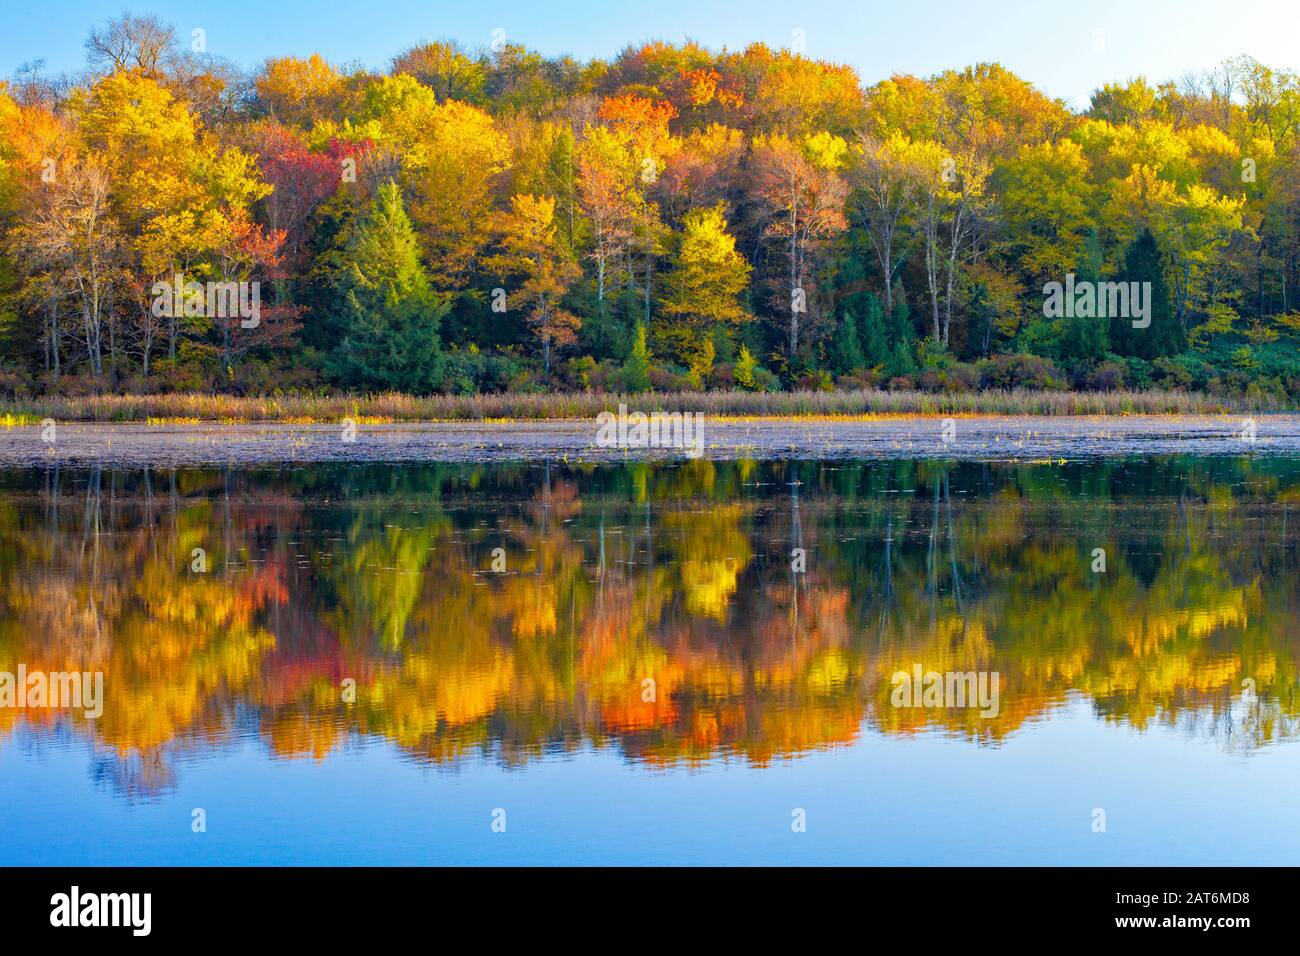 Le lac de 173 acres est l'un des deux lacs du parc national promis Land, dans les montagnes Pocono de Pennsylvanie. Banque D'Images